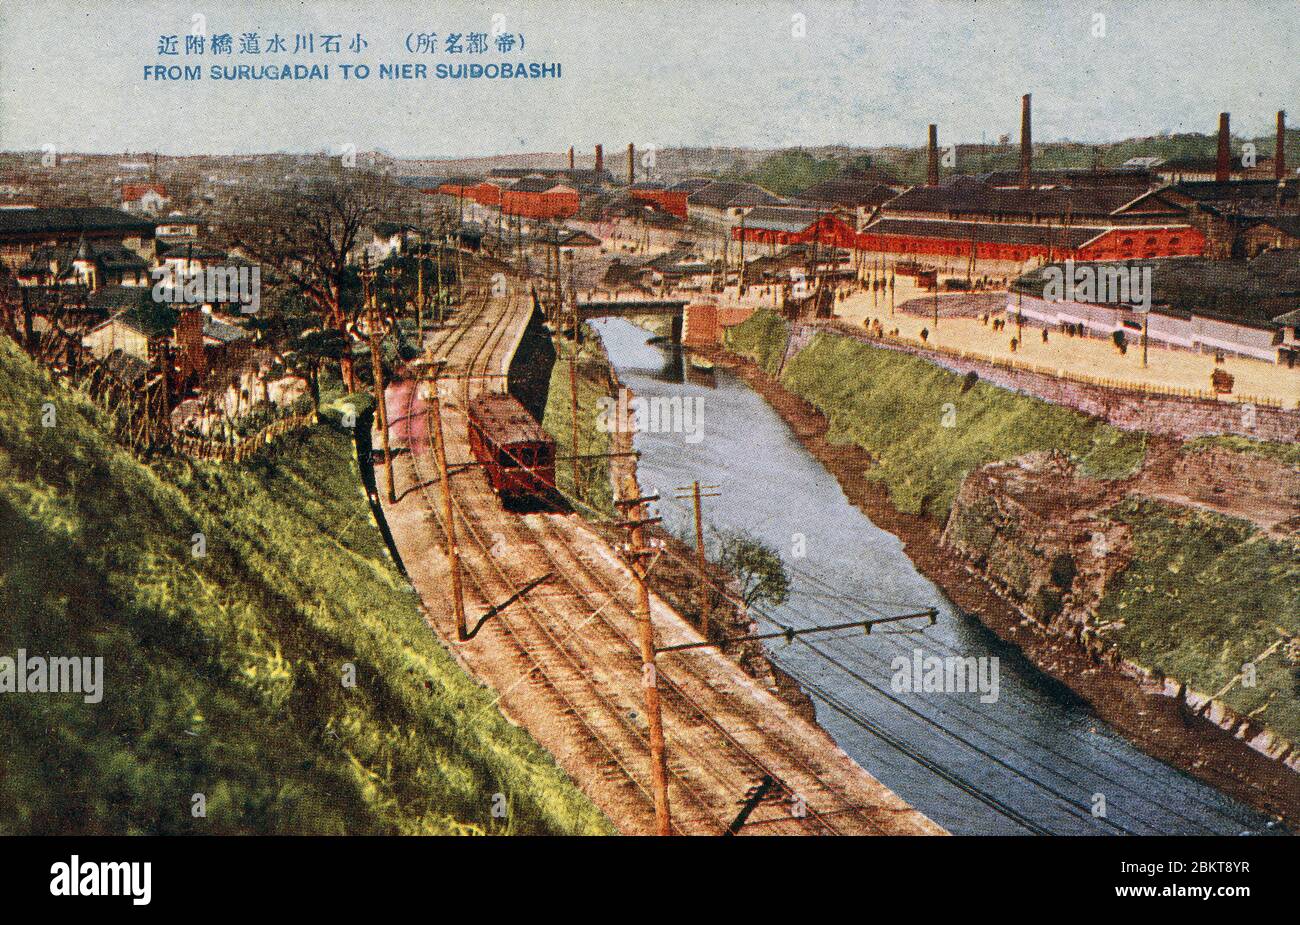 [ 1910er Japan - Blick auf Tokio ] - Blick auf Tokio von Surugudai nach Suidobashi. Vintage-Postkarte des 20. Jahrhunderts. Stockfoto